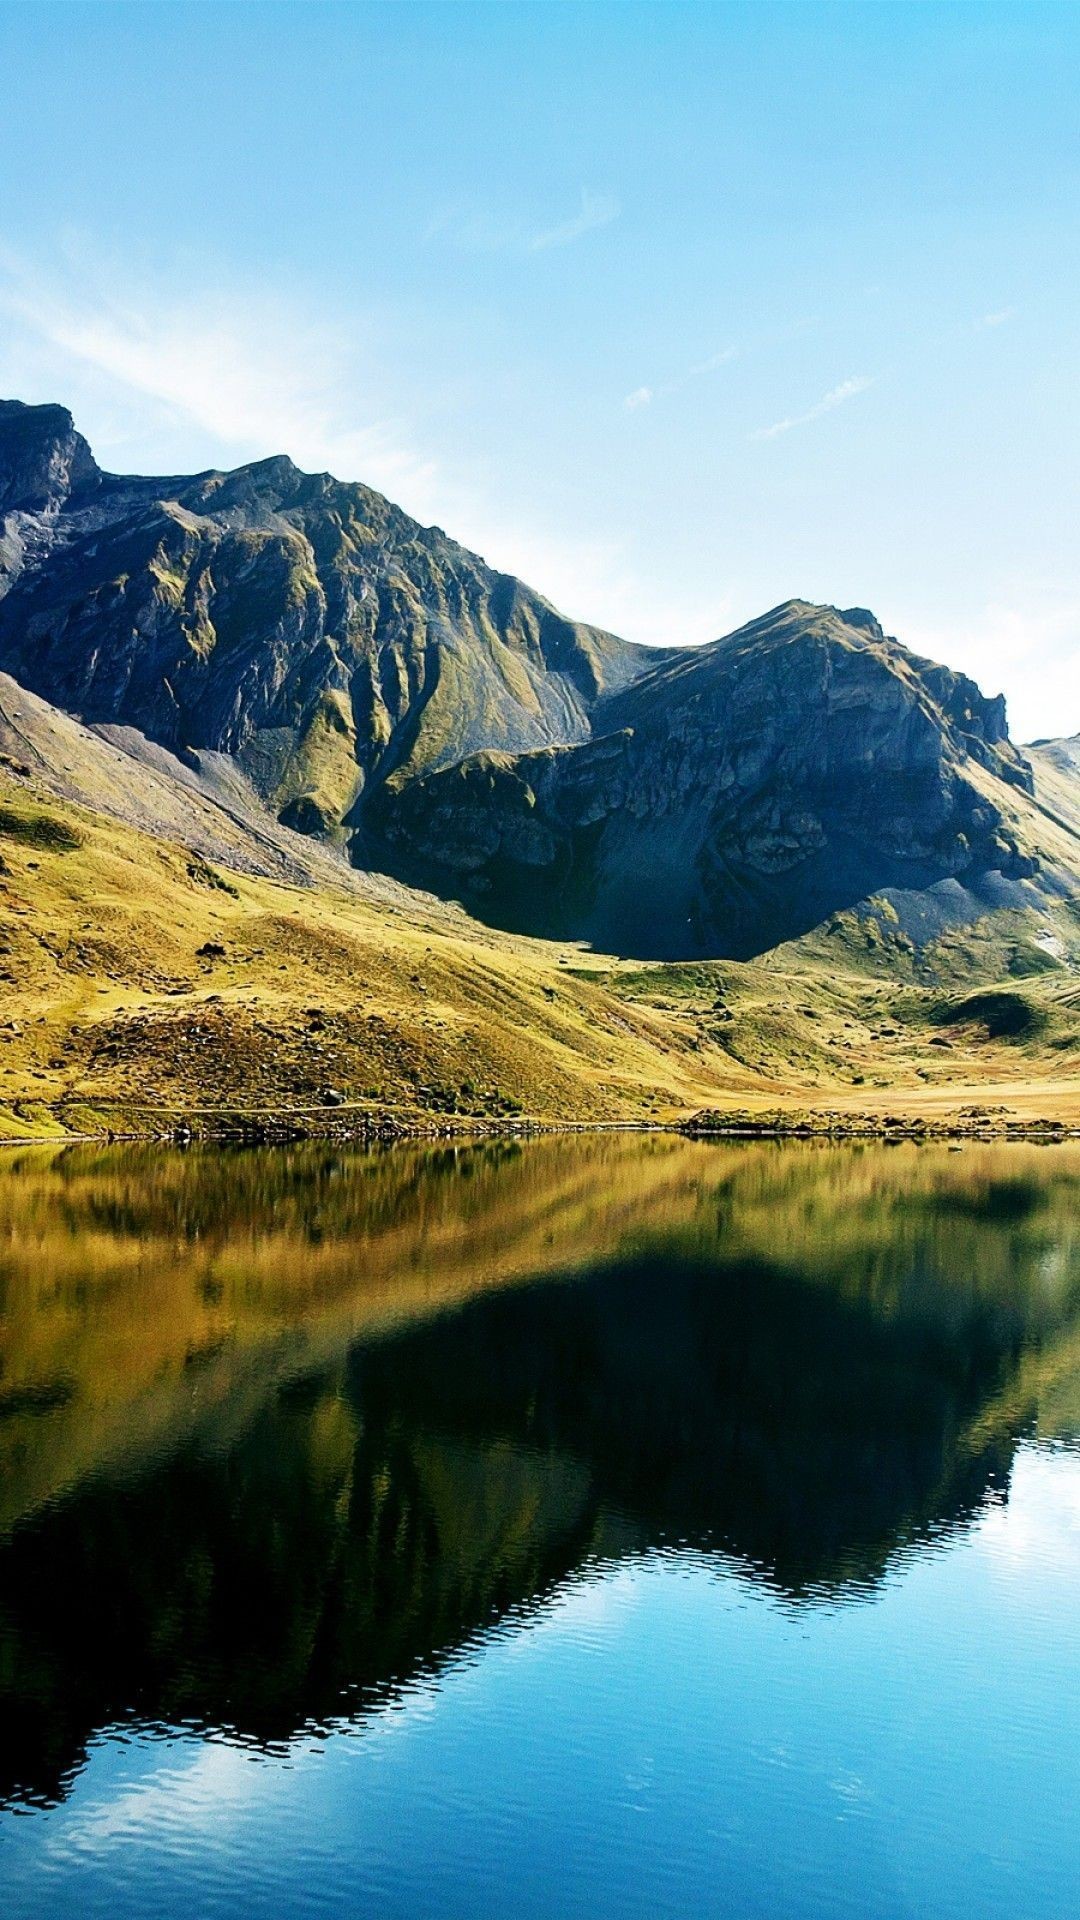 1080x1920 Lake in Swiss alps wallpaper iPhone 6 Plus - Wallpaper - Wallpaper .